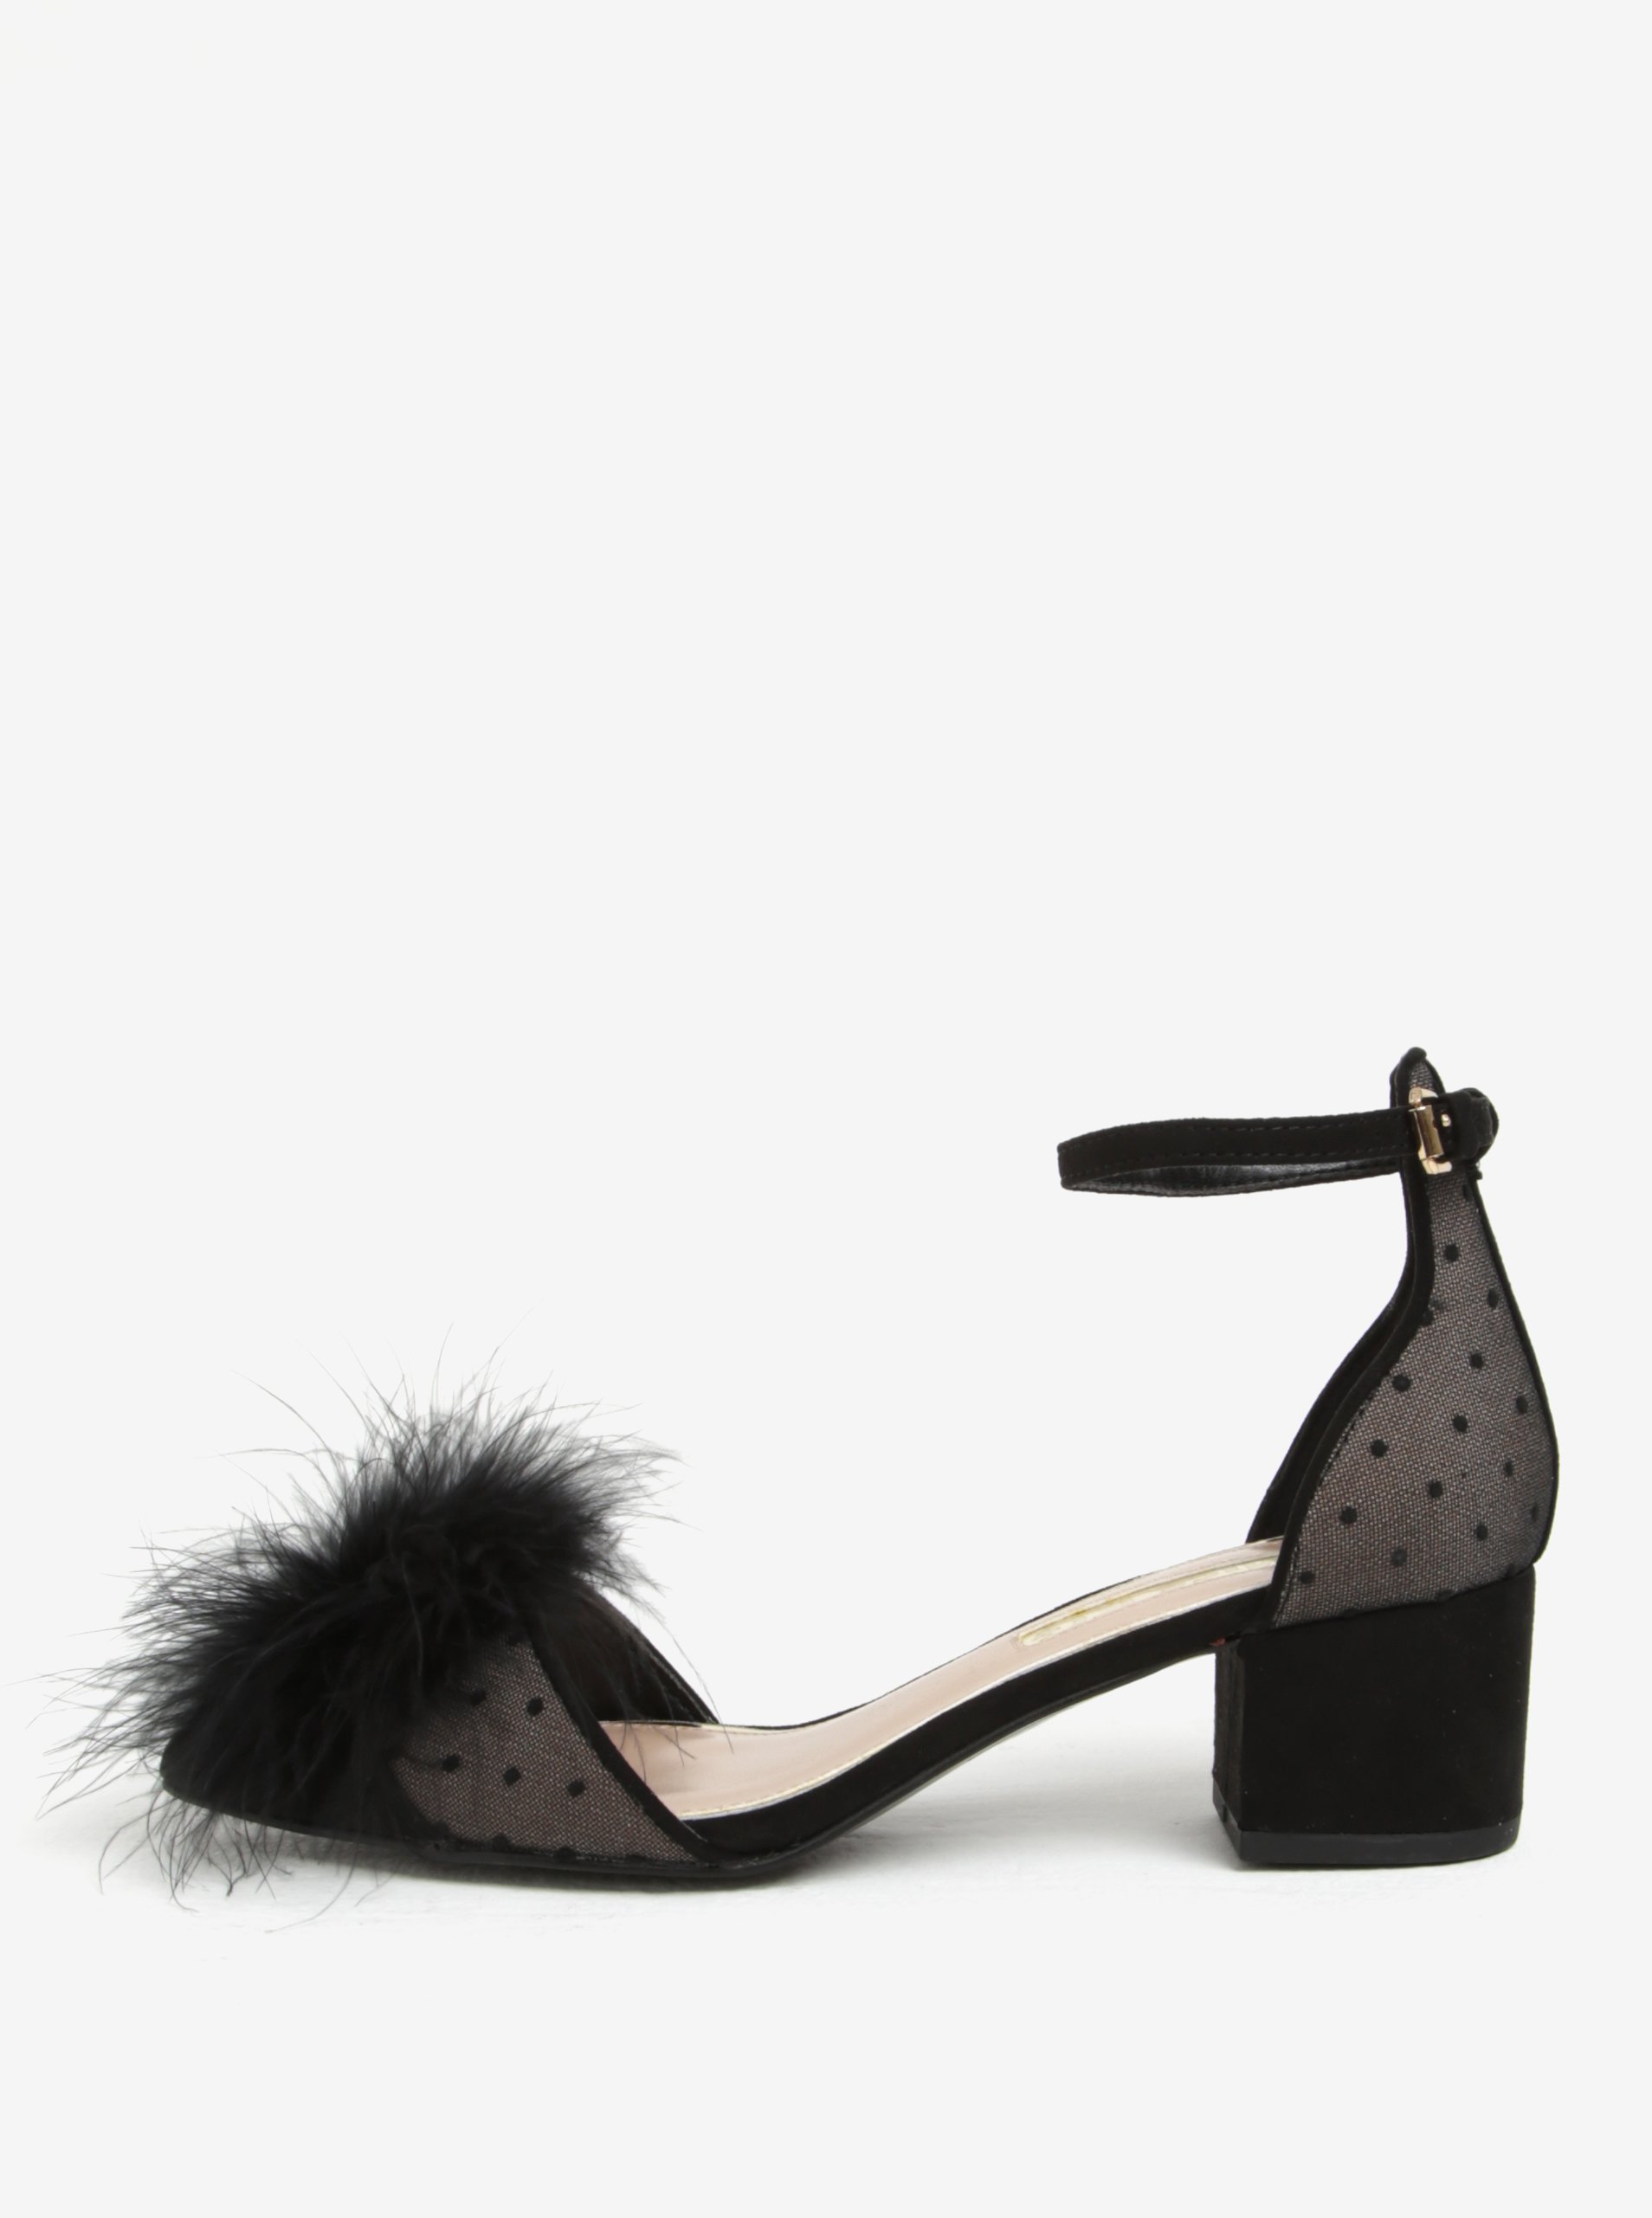 černé puntíkované sandálky na podpatku s peřím na špičce Miss KG Eleri